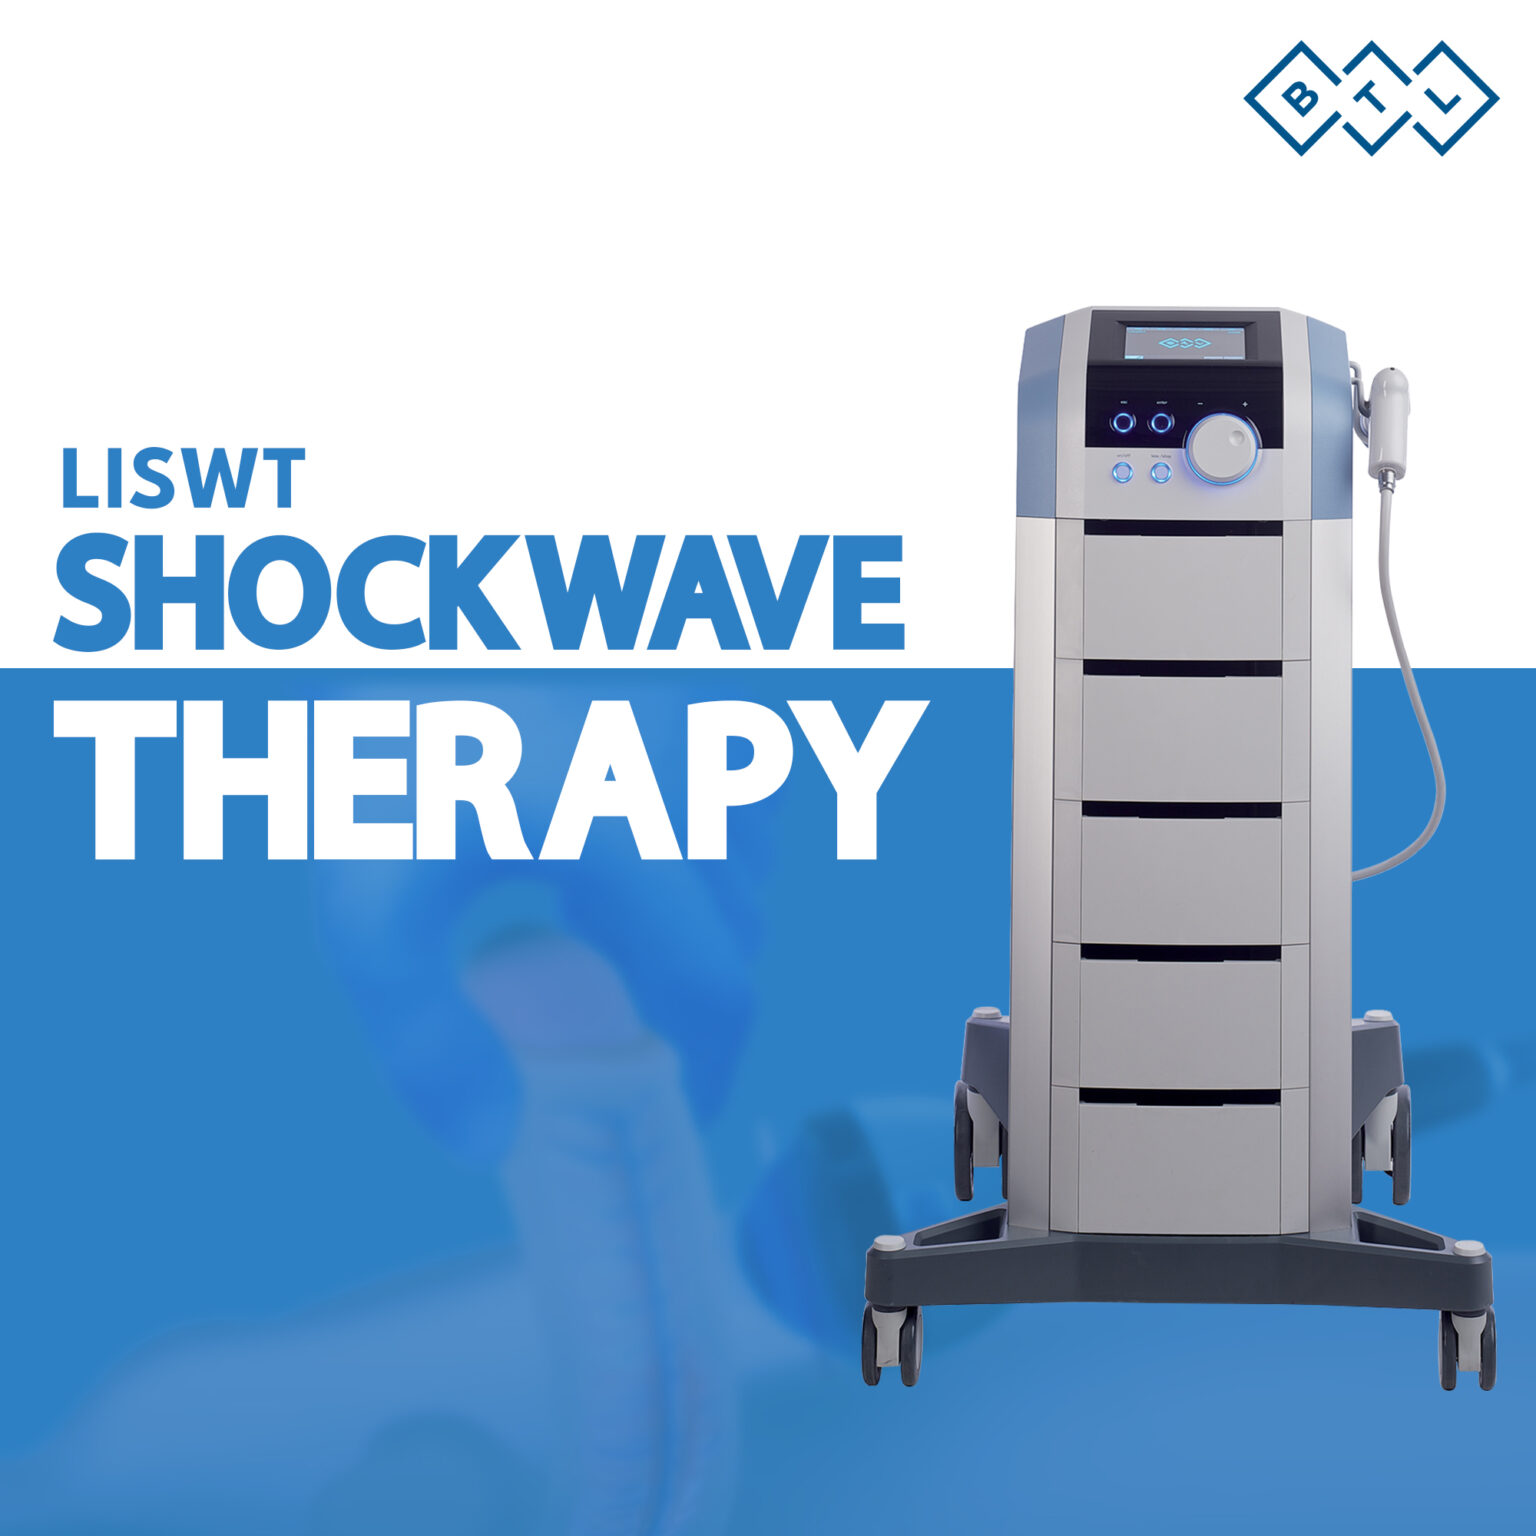 Shockwave Therapy Brand Ambassador - Dr. Vijayant Govinda Gupta